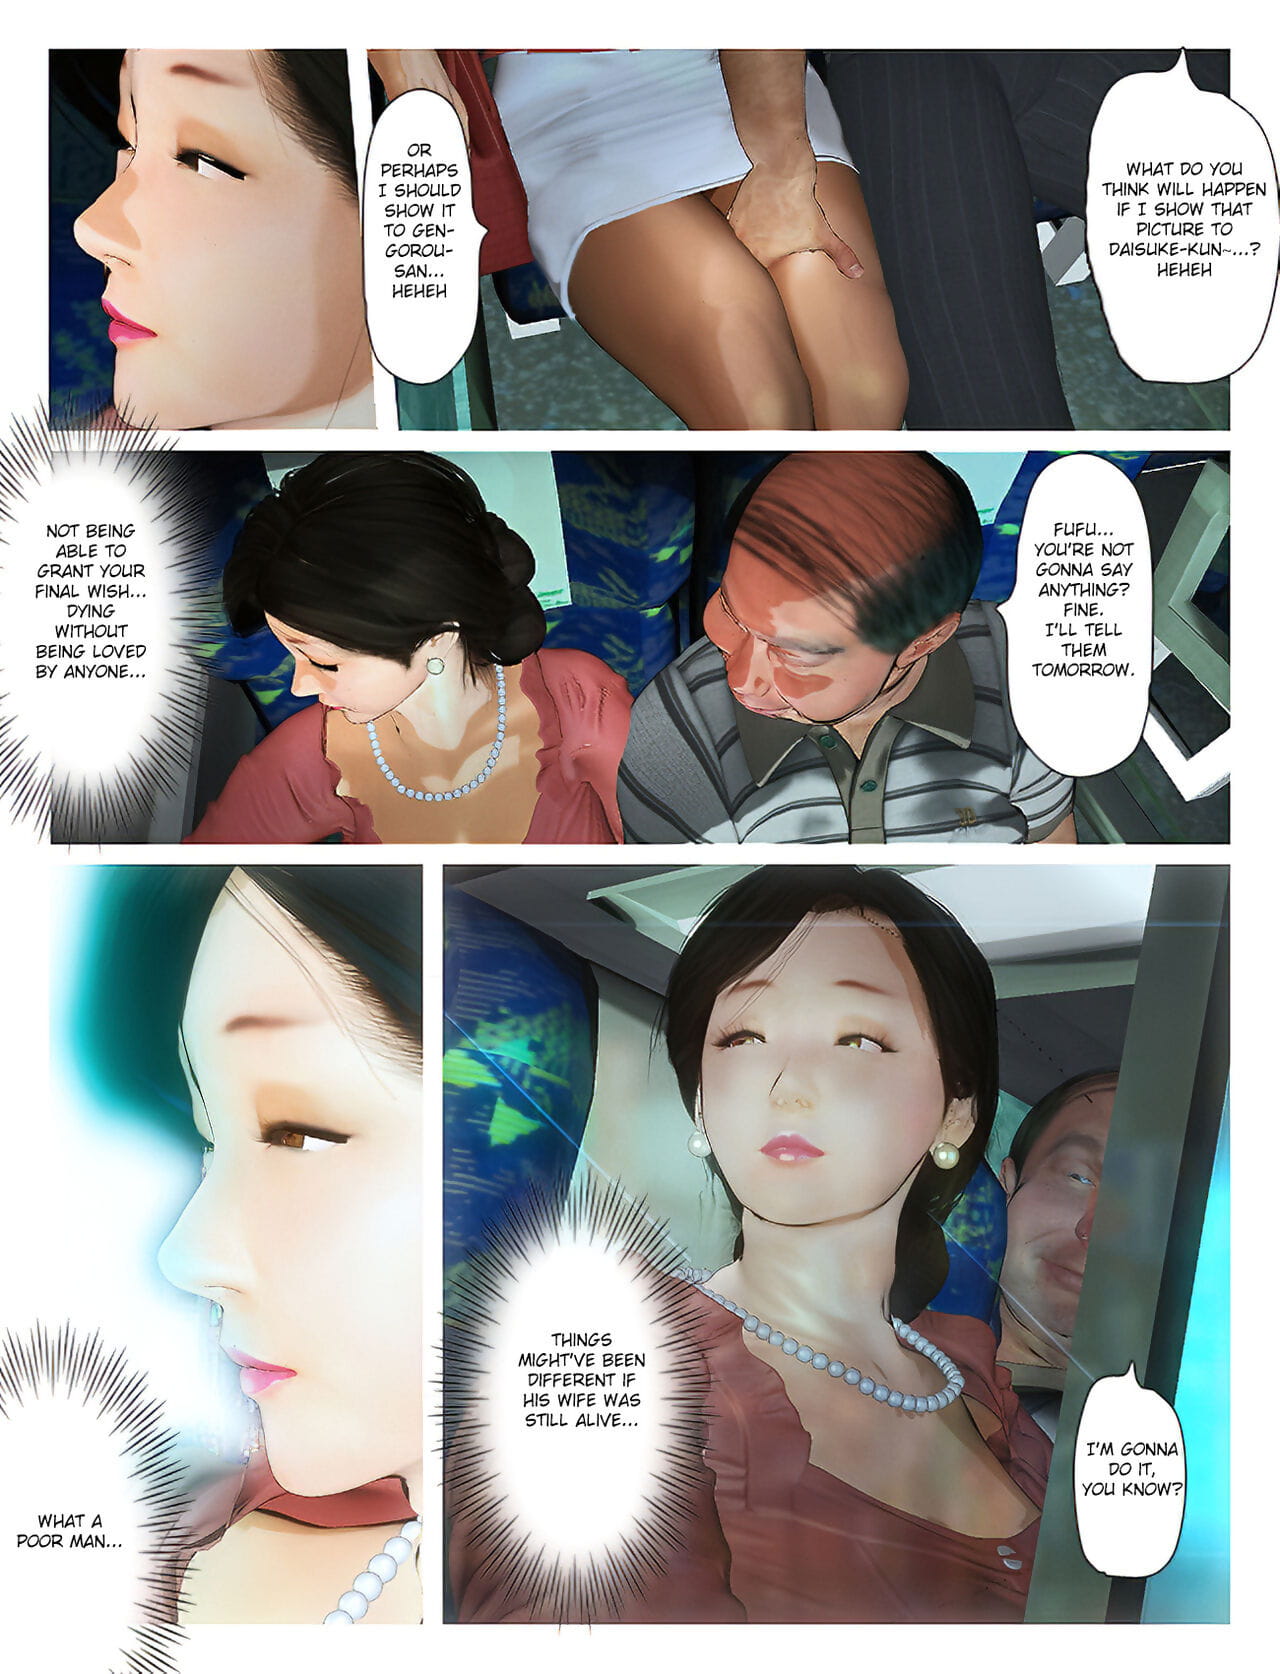 Kyou pas de misako san 2019:2 PARTIE 2 page 1